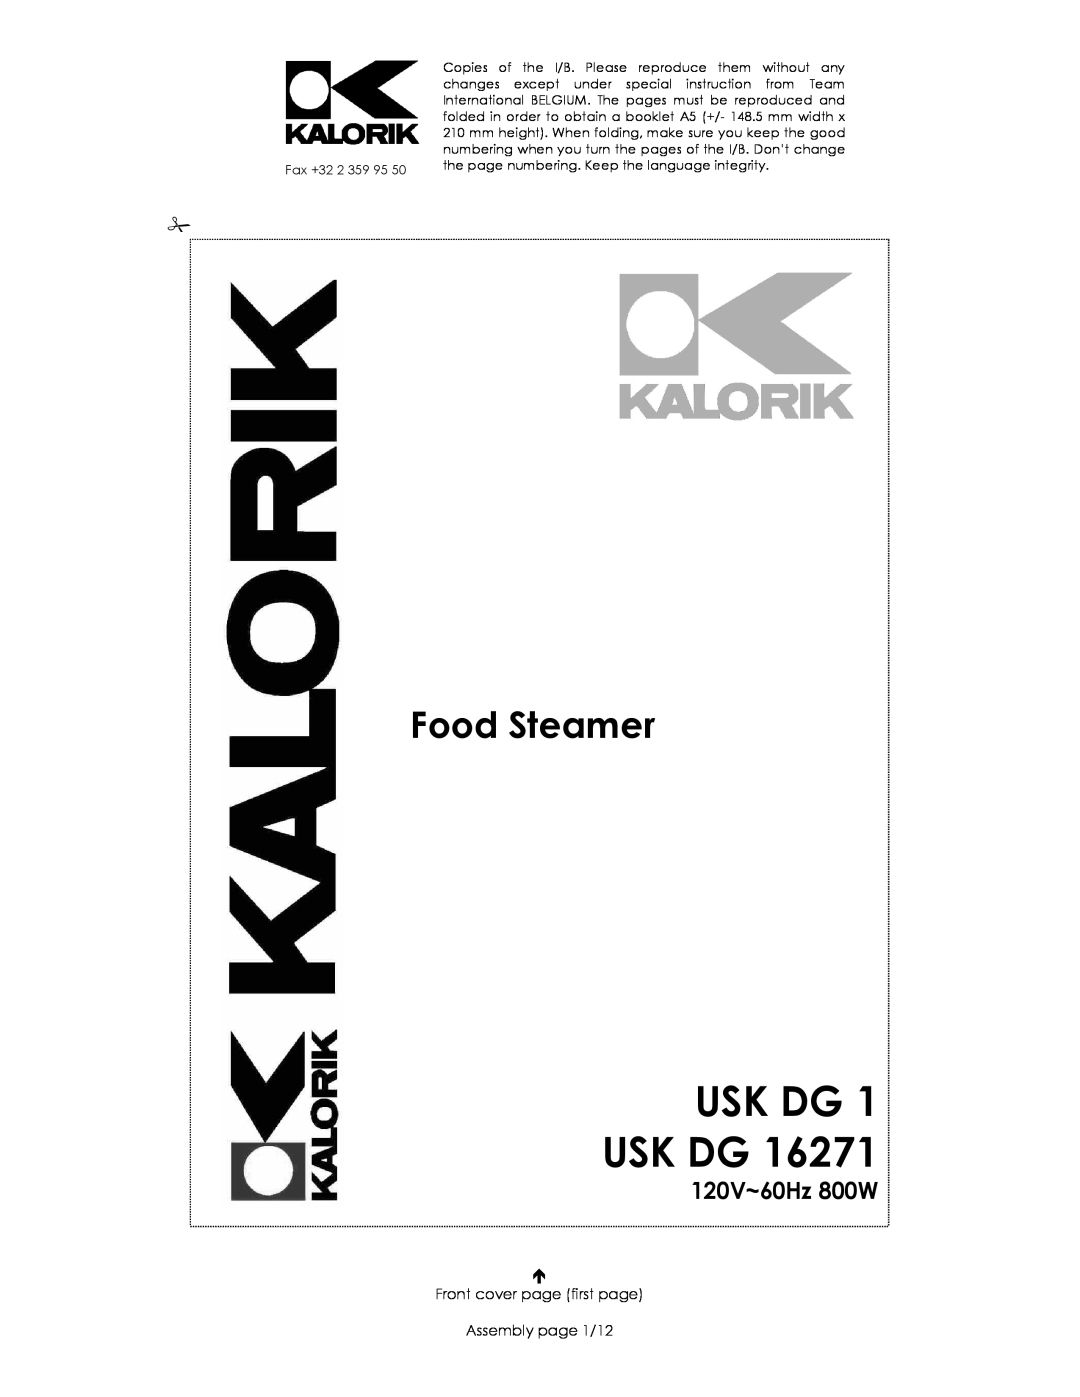 Kalorik USK DG 1 manual Usk Dg Usk Dg, Food Steamer, 120V~60Hz 800W, Front cover page first page Assembly page 1/12 